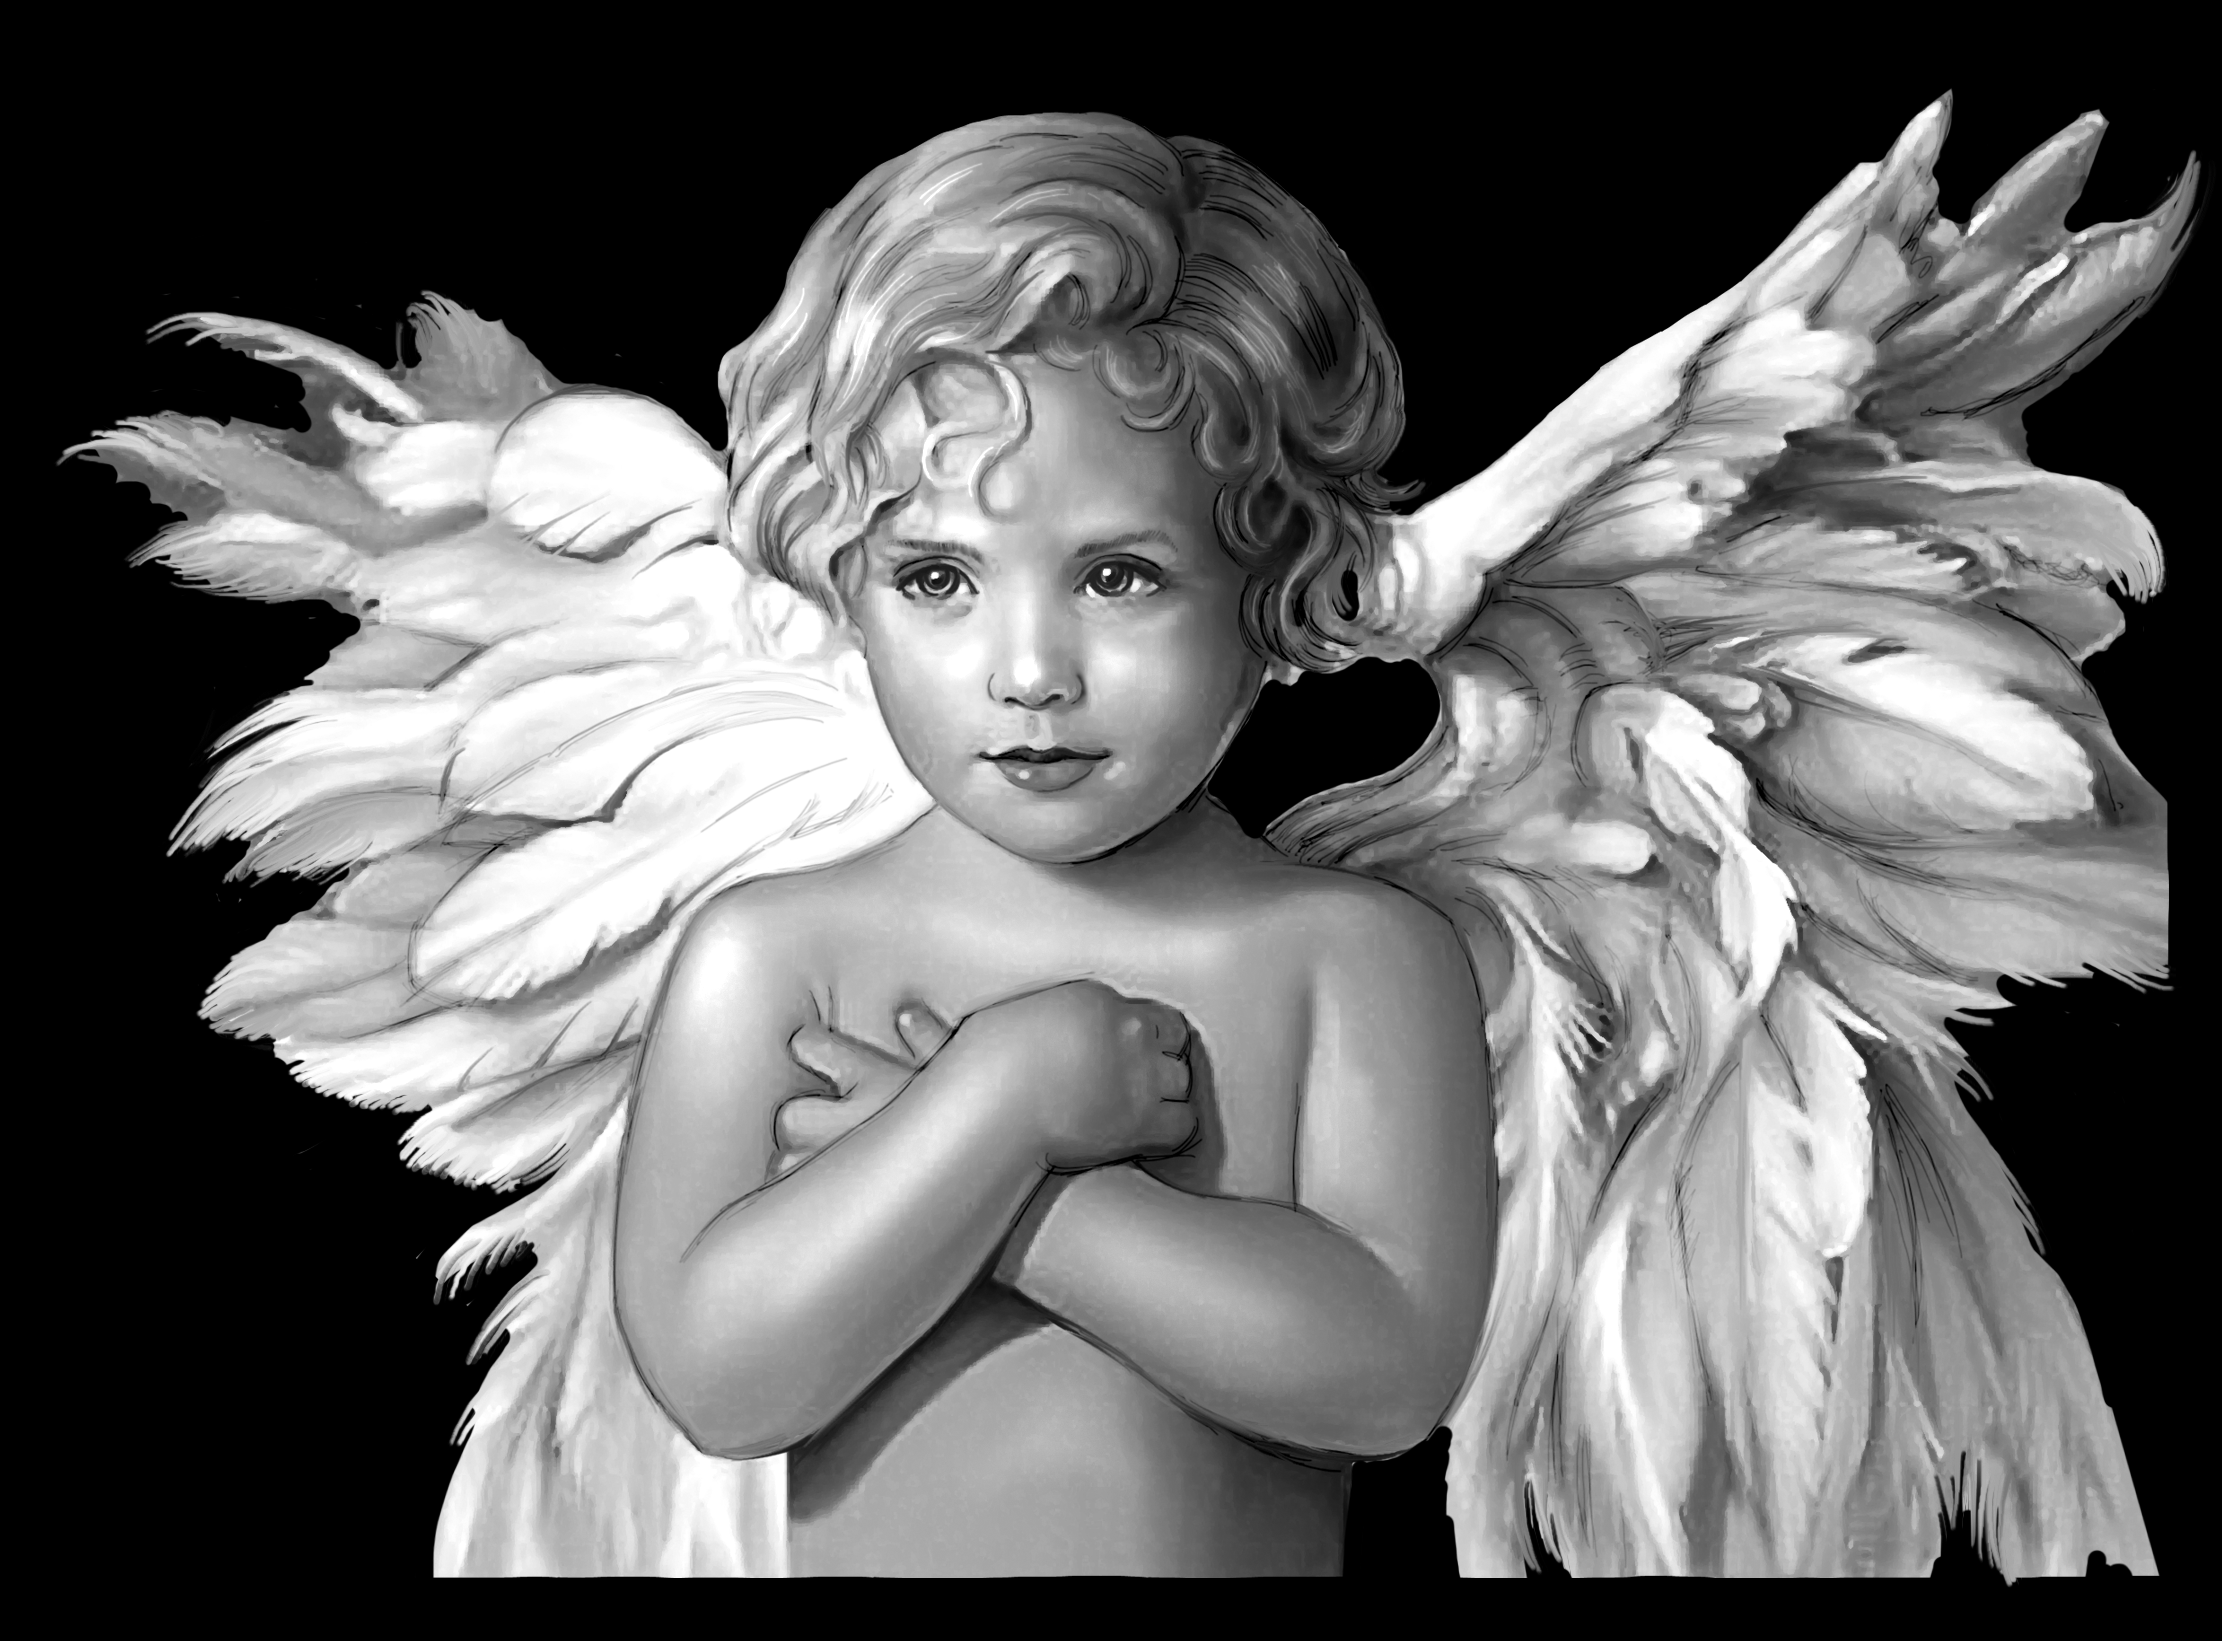 Little angel на русском языке. Ангелочки для гравировки. Ангелочки на памятник. Гравировка ангела на памятник. Ангел рисунок.